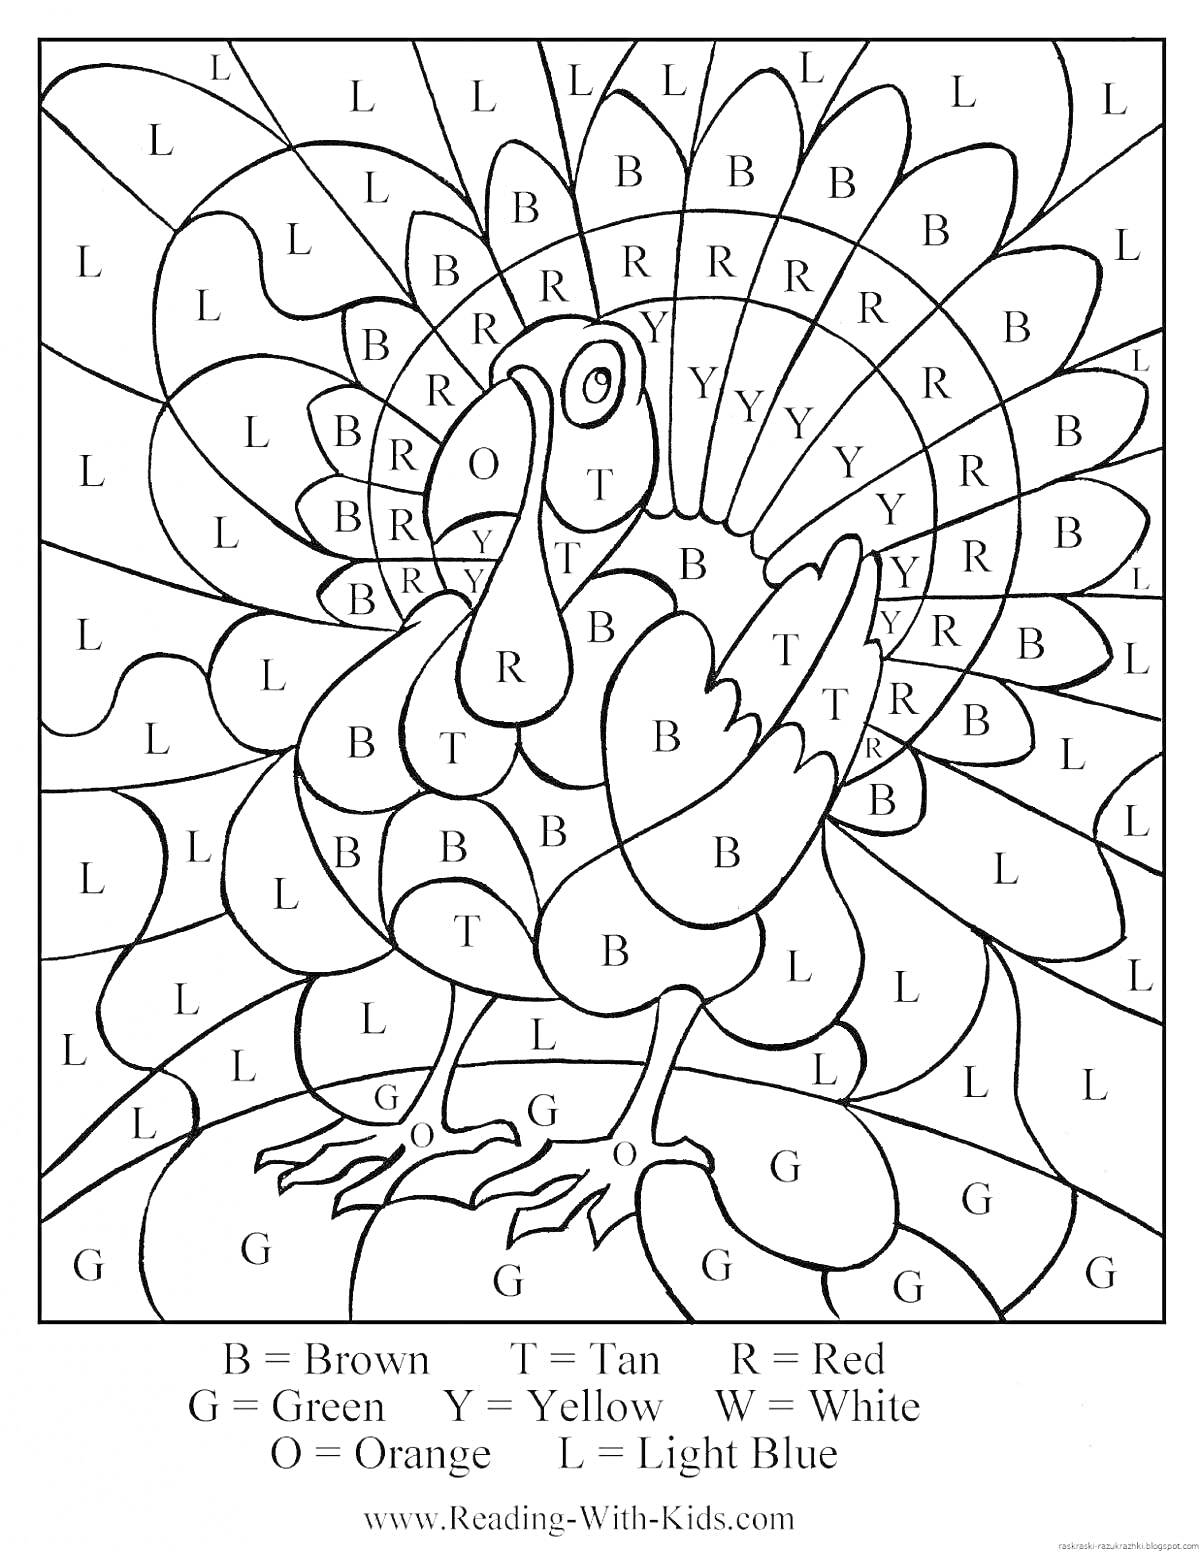 Раскраска индейка с надписями-метками для раскрашивания